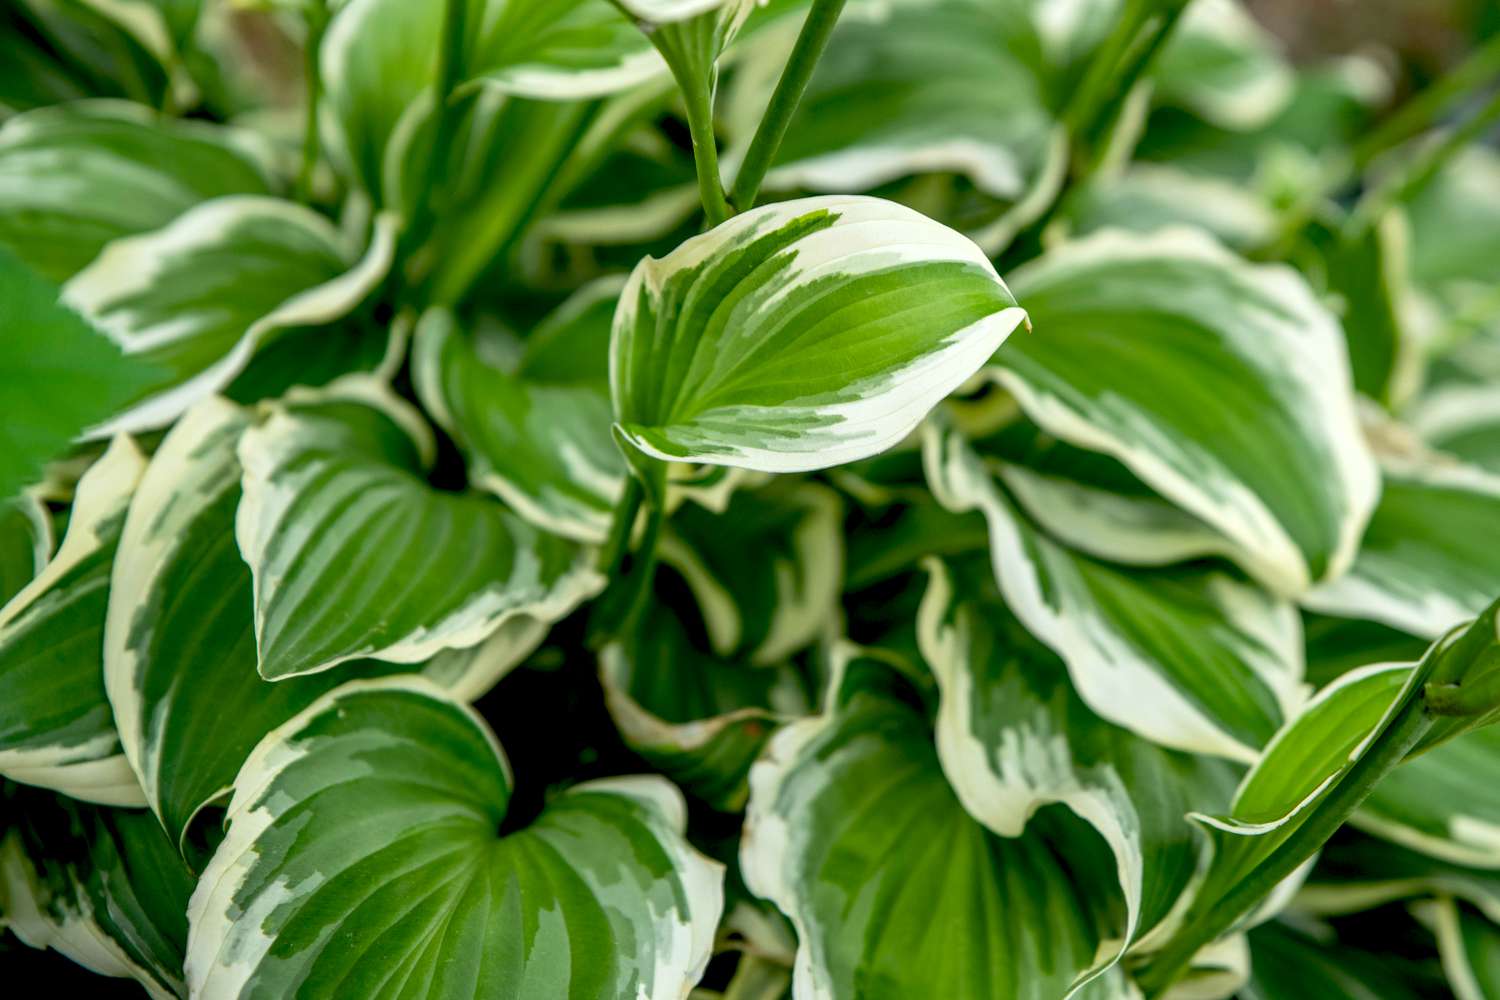 Plante d'hosta Francee avec des feuilles panachées vertes et blanches en forme de cœur poussant étroitement ensemble